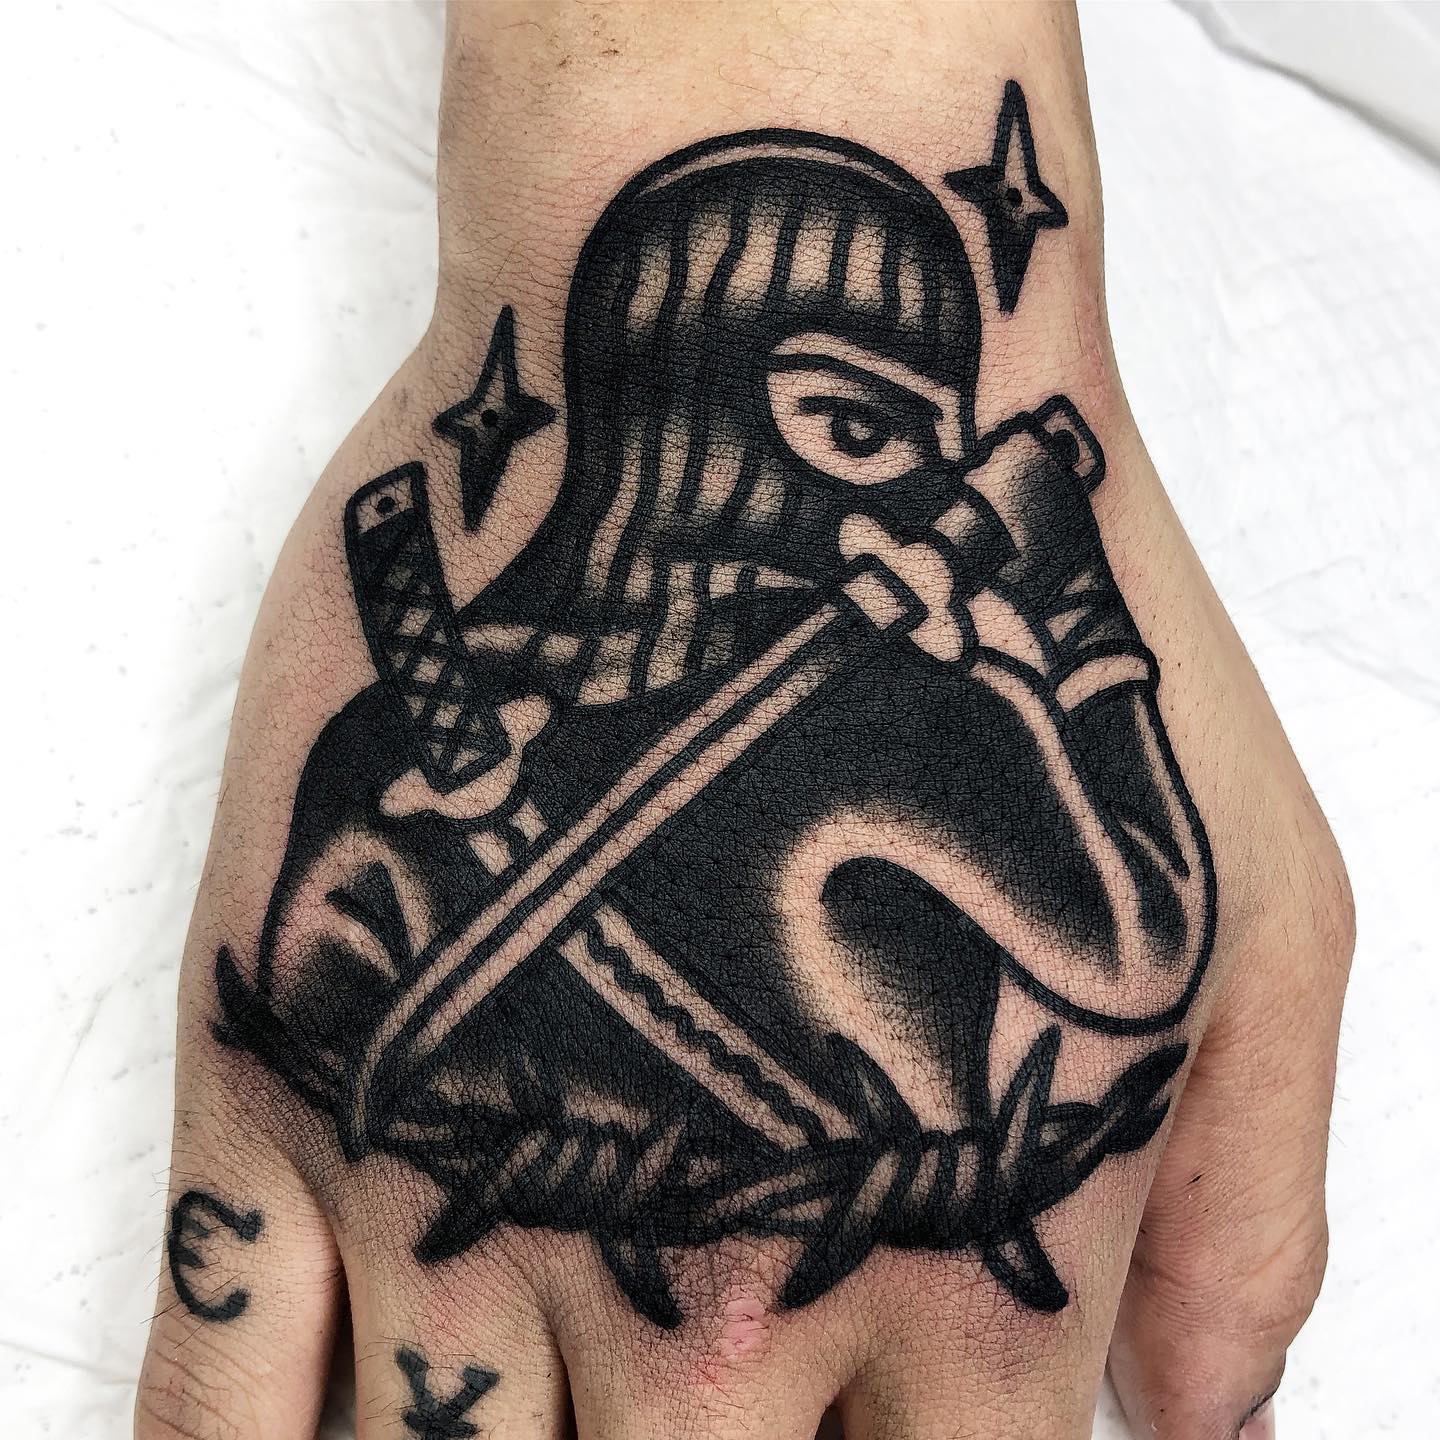 Tatuagens de ninja: confira o significado e fotos - Amo Tatuagem